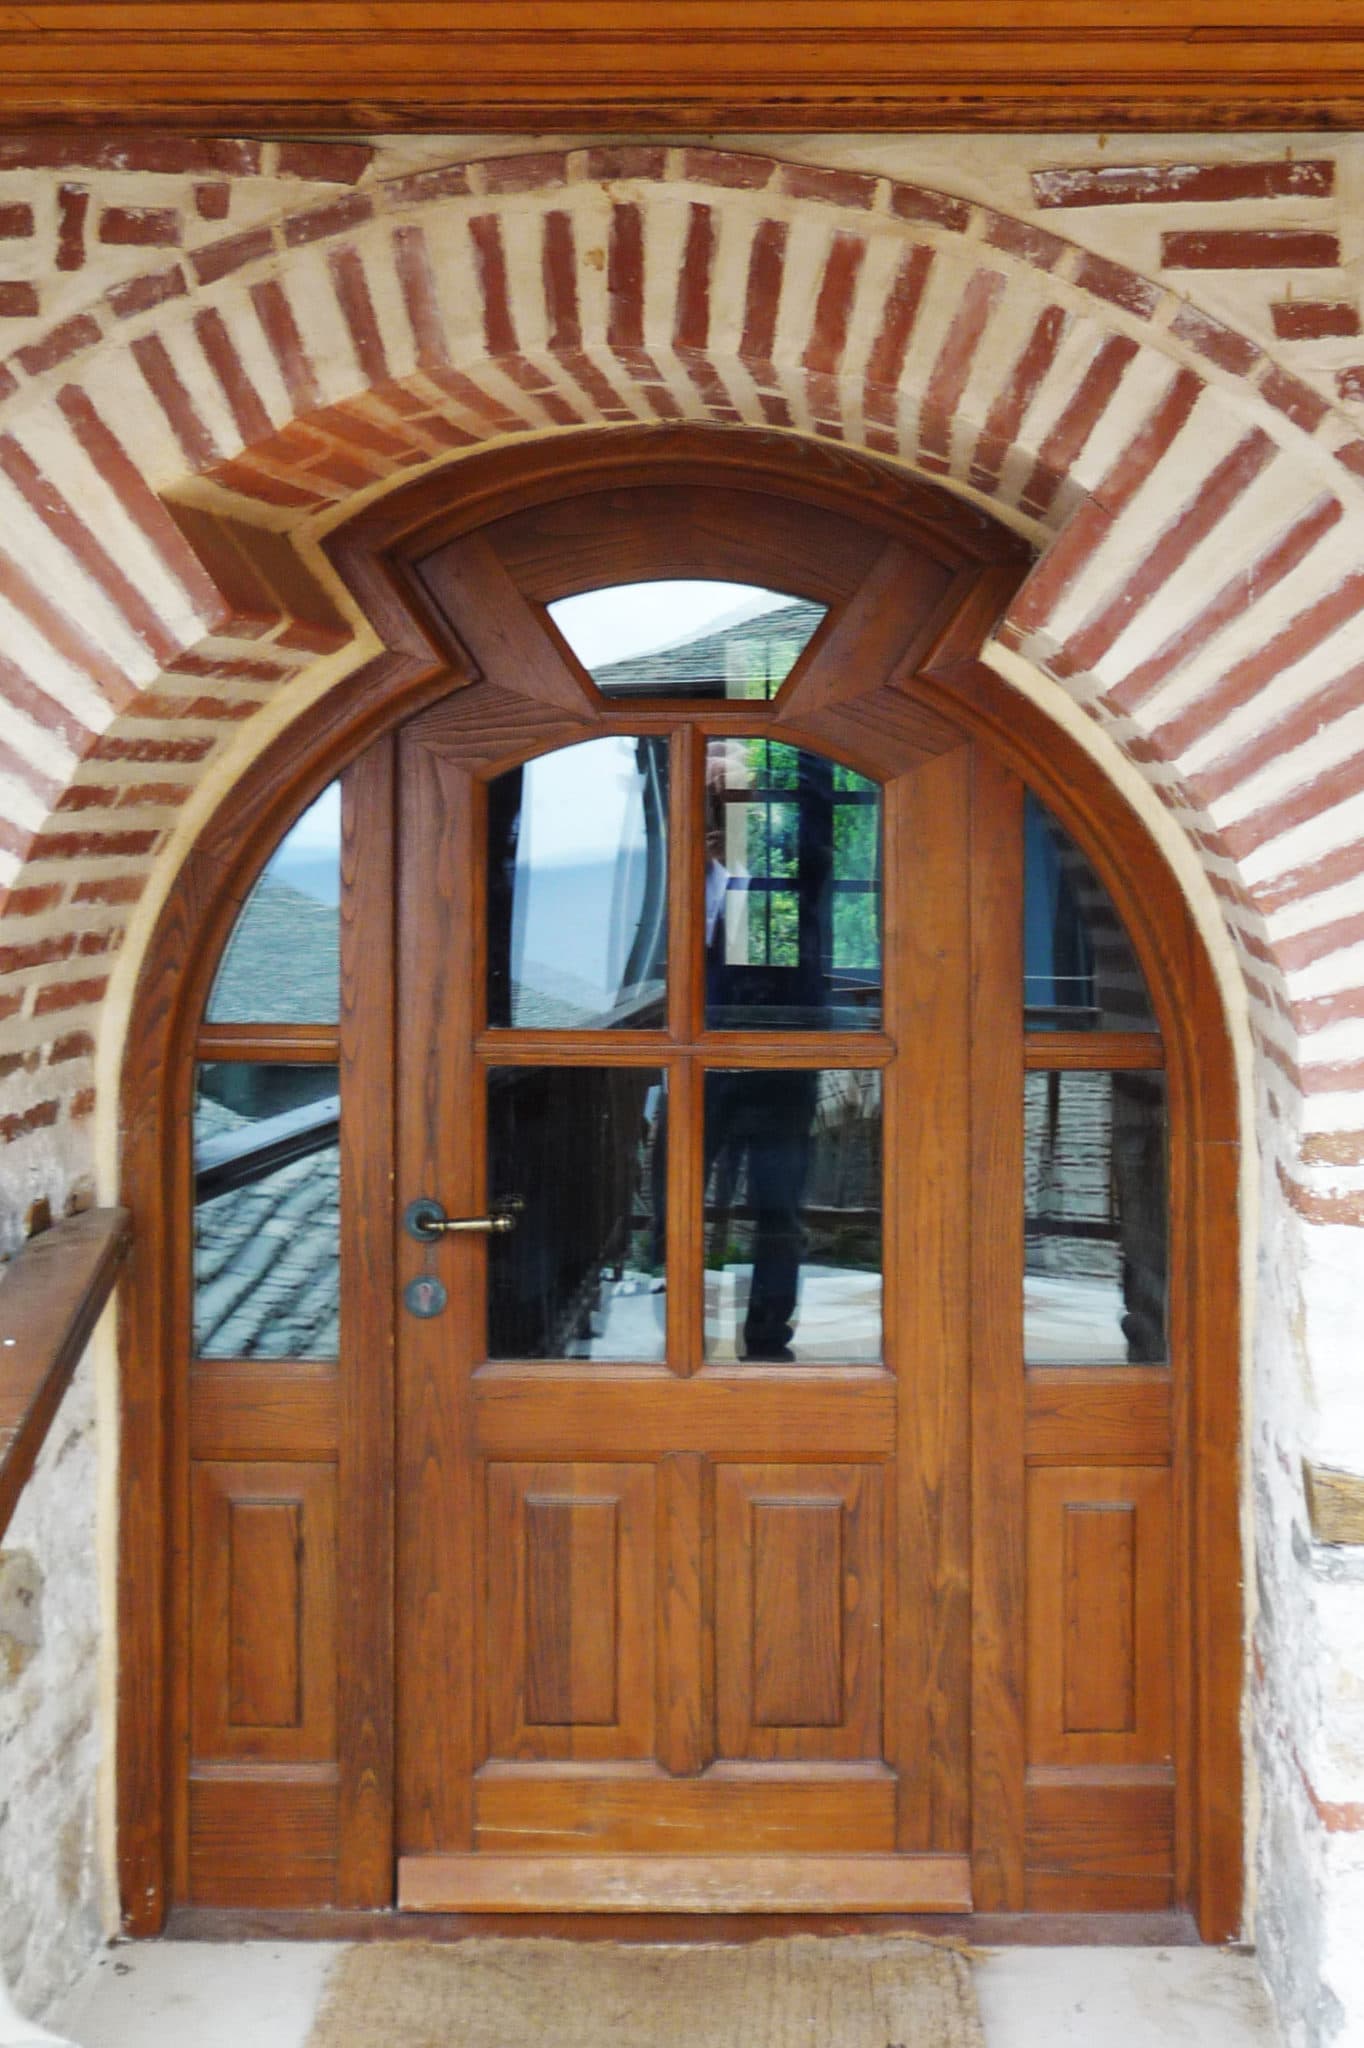 πόρτα με ανοιγόμενο φύλλο ακανόνιστου σχήματος